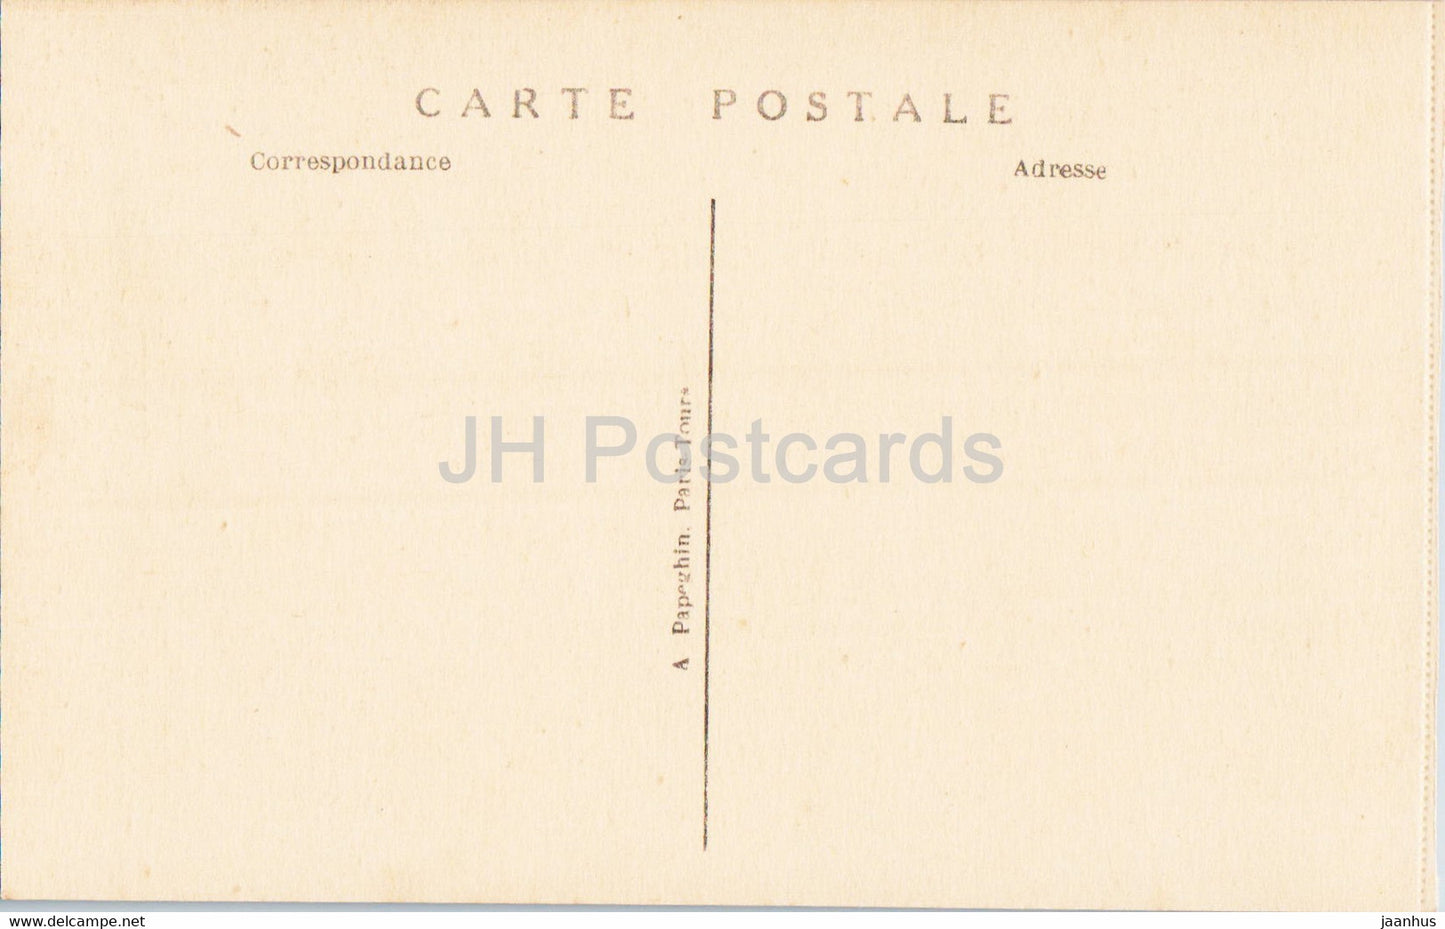 Versailles - Le Parc - Le Bassin de Latone un jour de grandes Eaux - 104 - carte postale ancienne - France - inutilisée